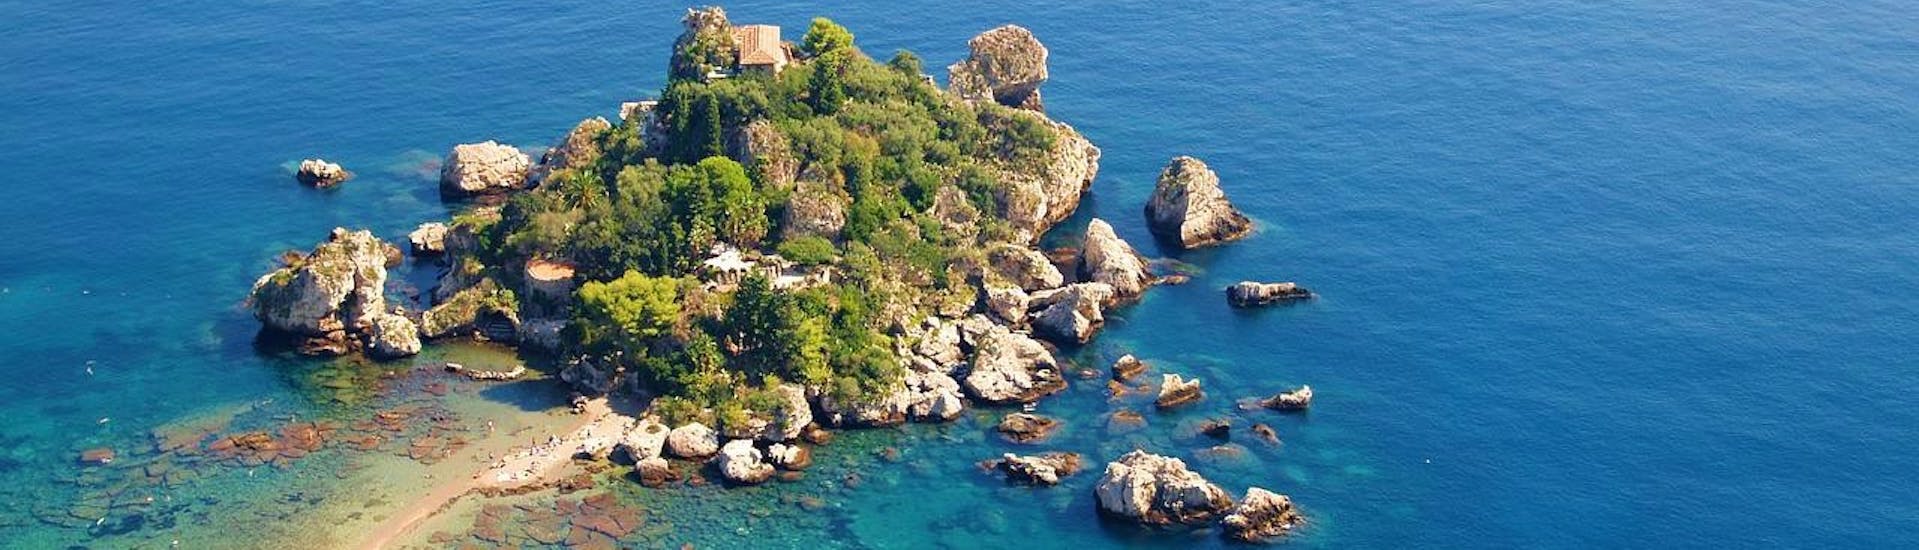 Preciosa foto de Isola Bella, que puedes visitar durante nuestro paseo en barco desde Giardini Naxos por la costa de Taormina, con Enjoy Sicily.